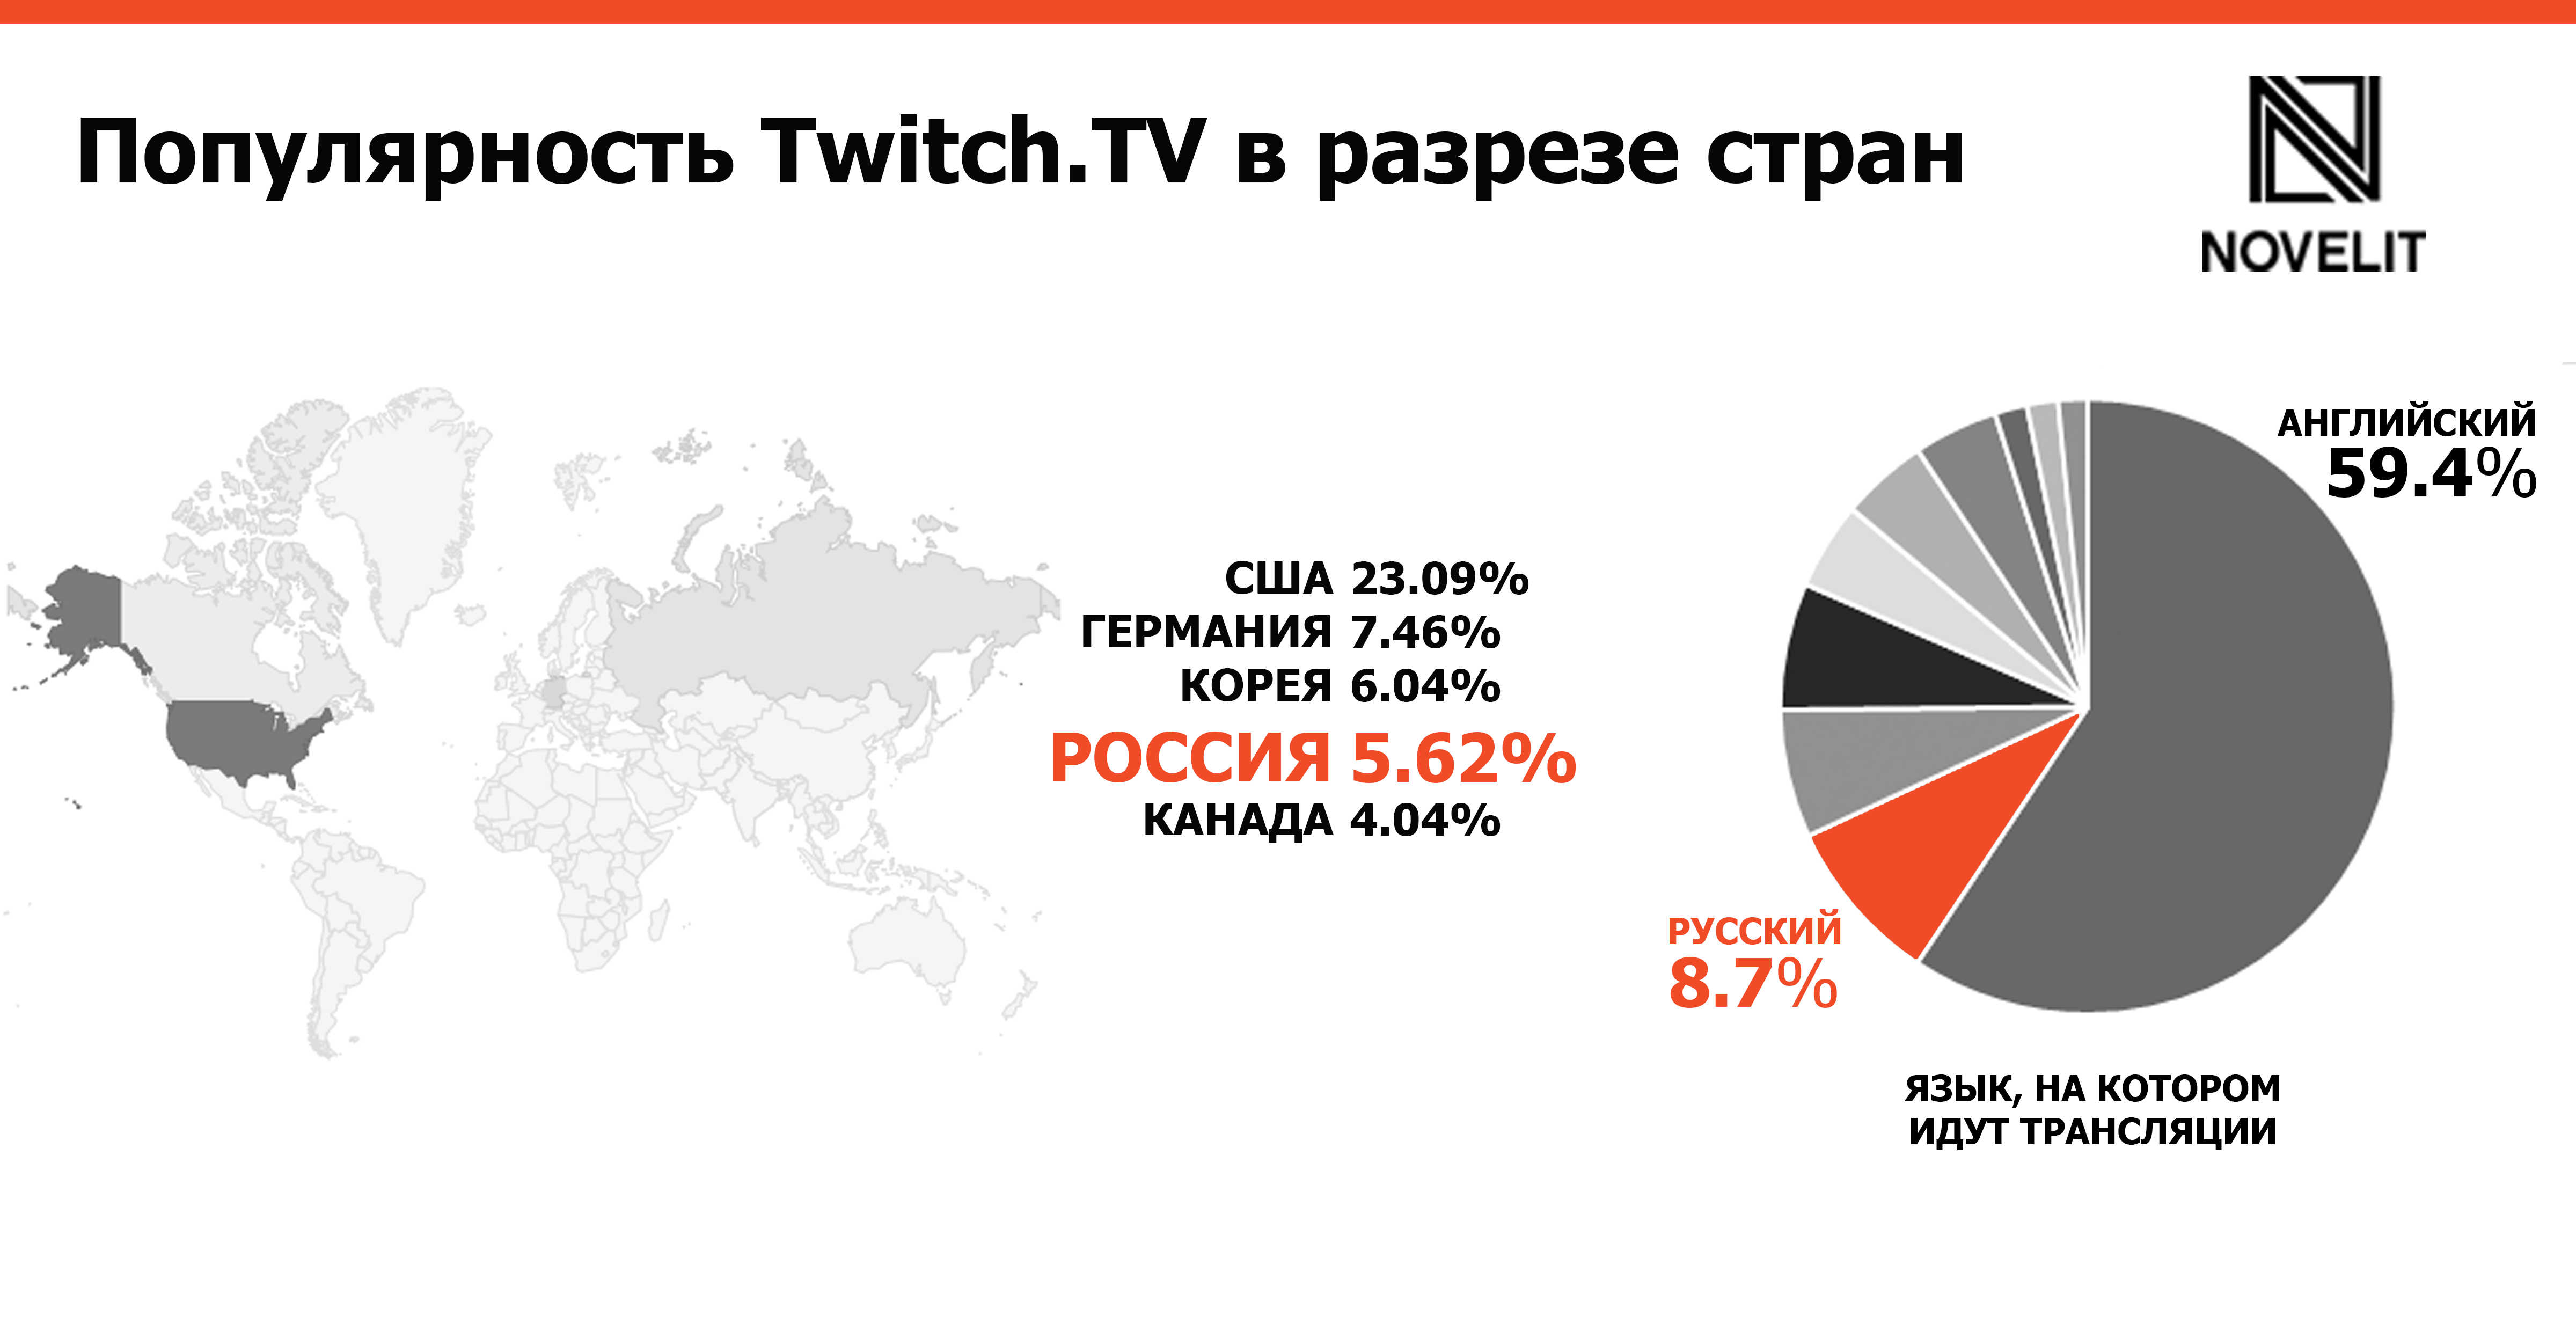 Популярность Twitch в разных странах 